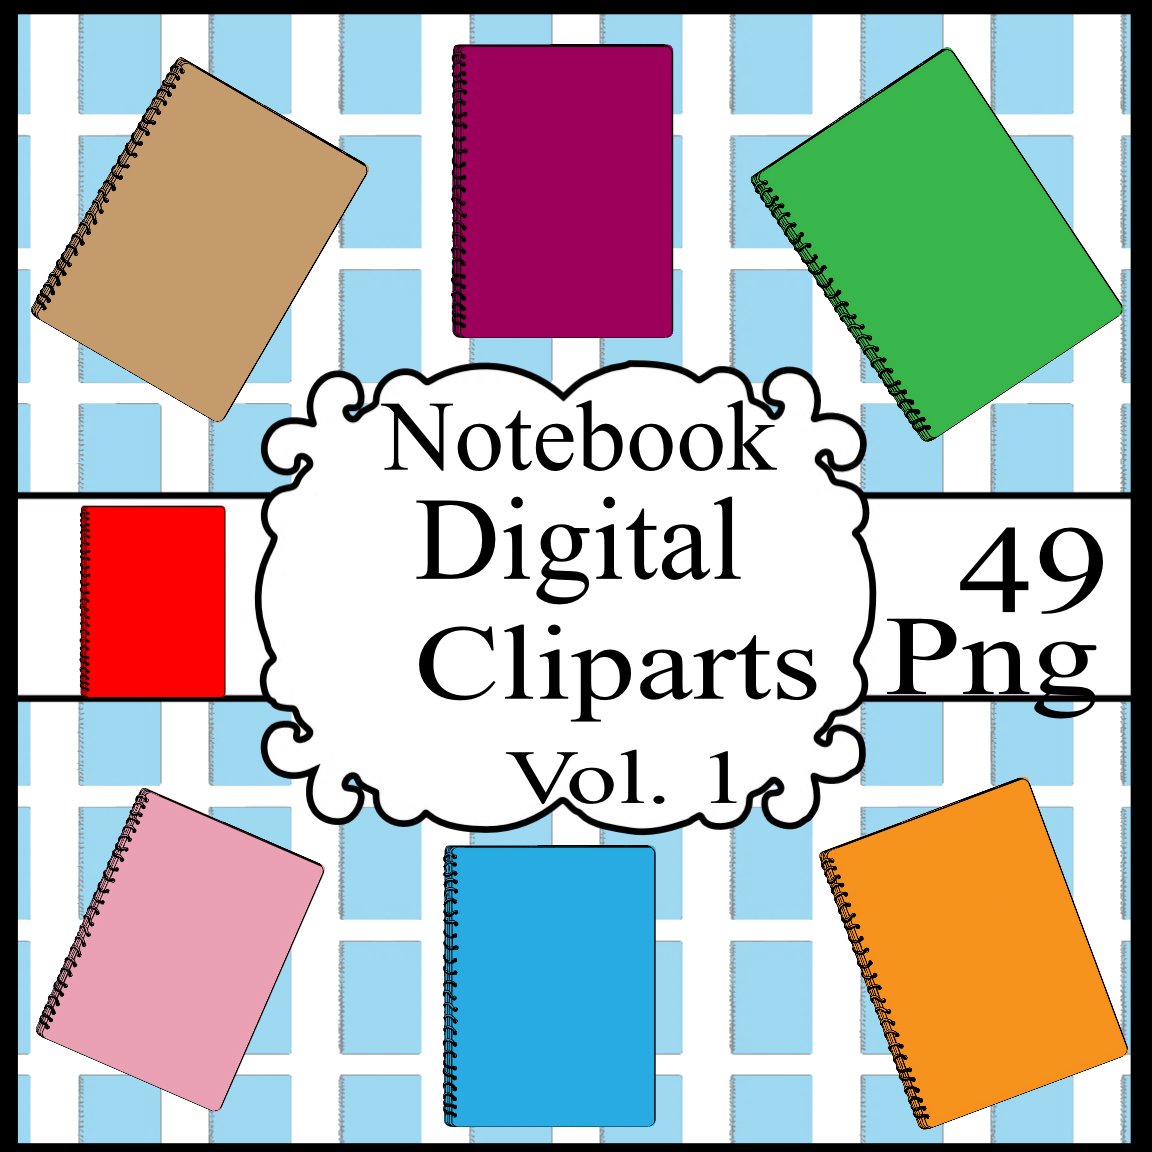 Notebook Digital Cliparts Vol. 1